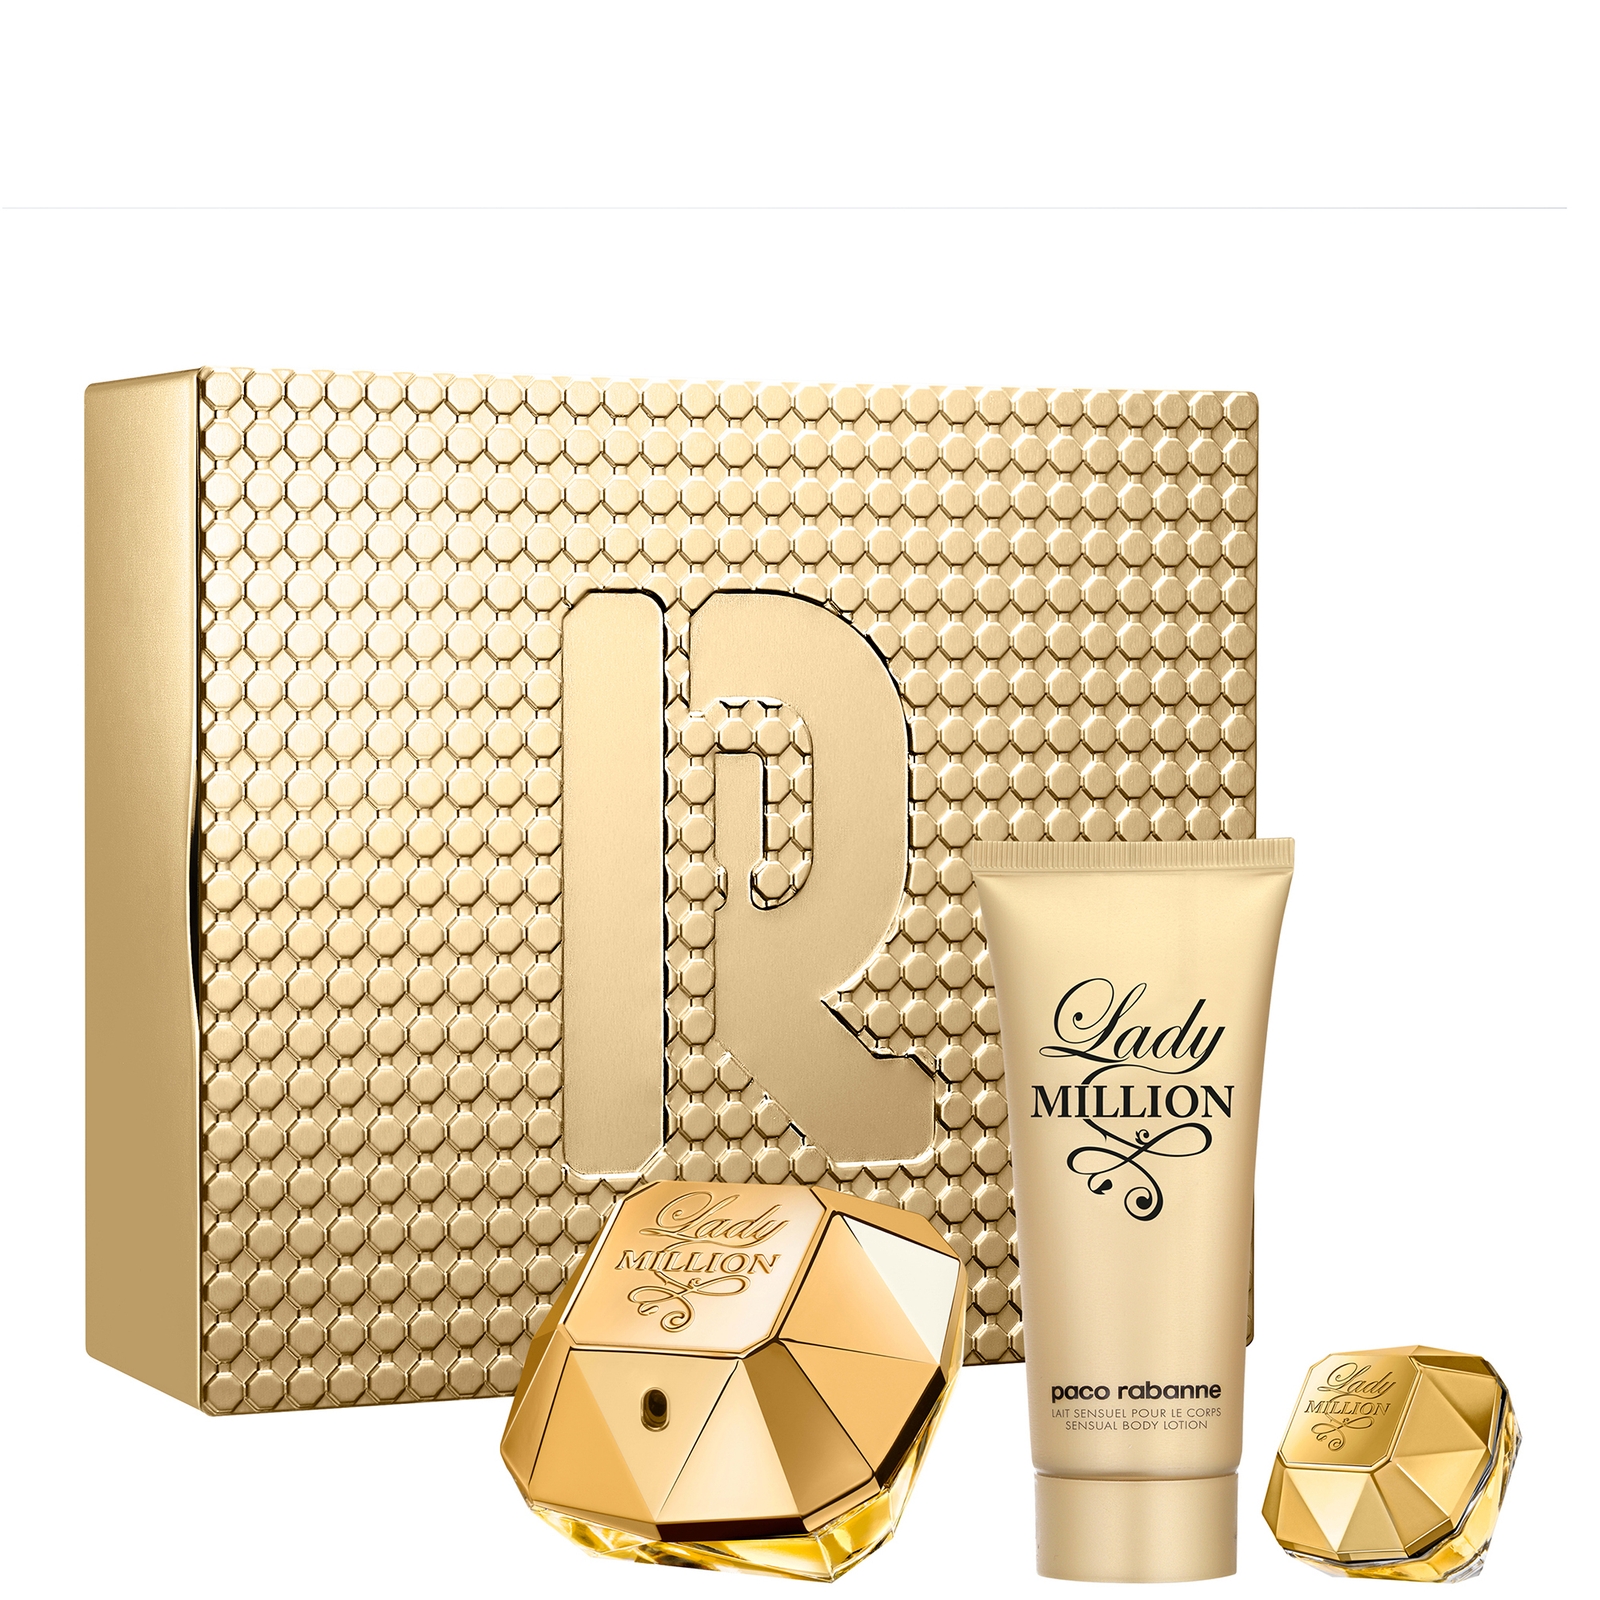 Paco Rabanne Lady Million 80ml Eau de Parfum and 100ml Sensual Body Lotion Set with 5ml Eau de Parfu